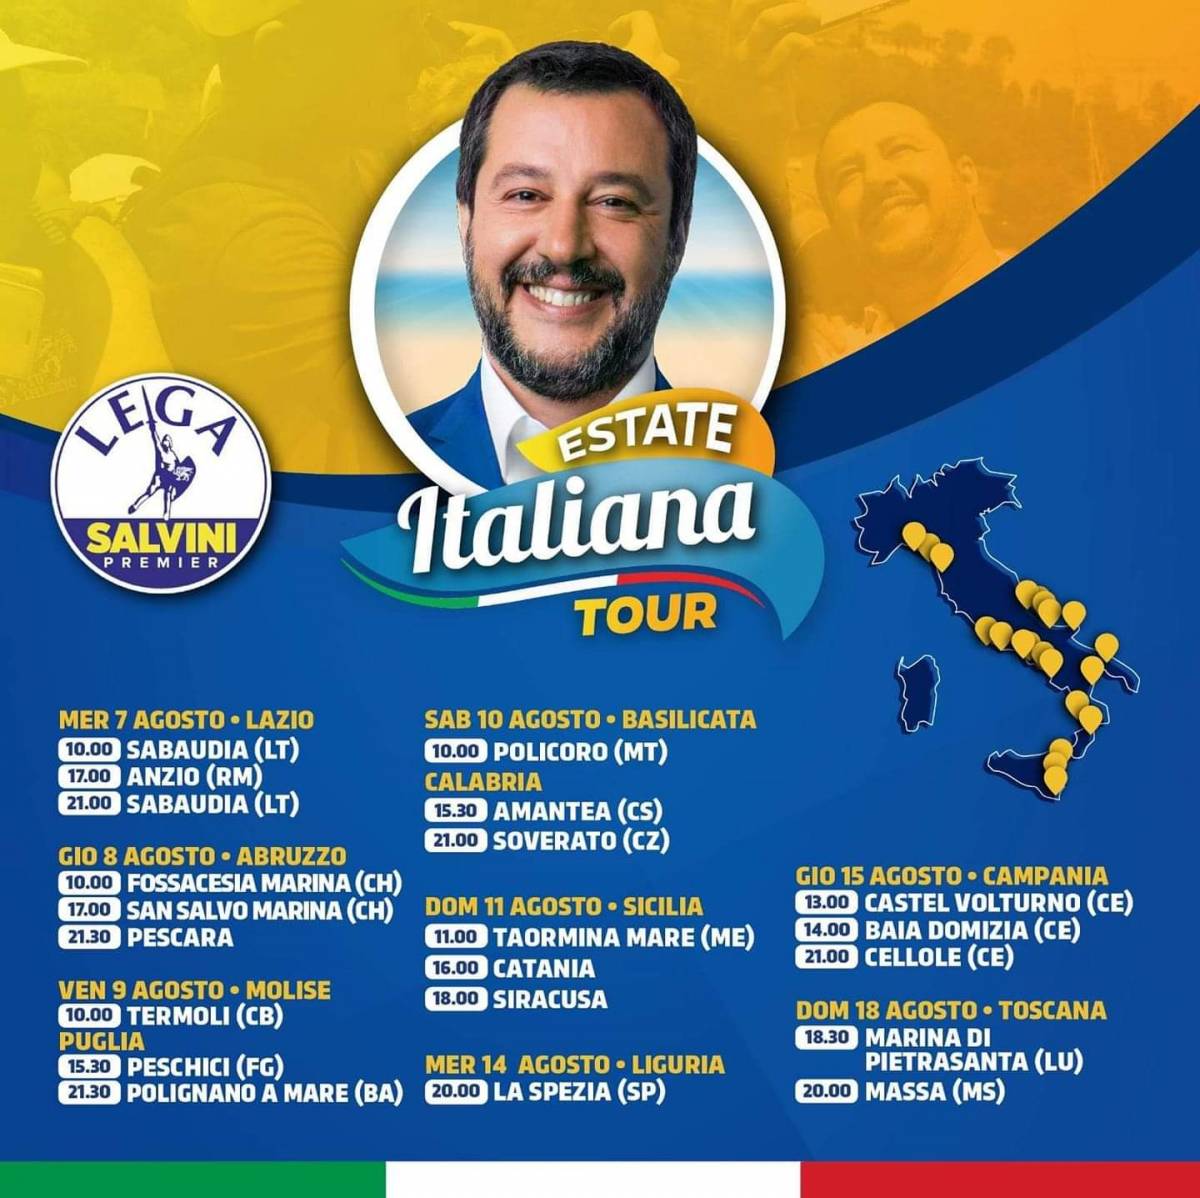 Salvini in tour sulle spiagge italiane, ma niente dj set